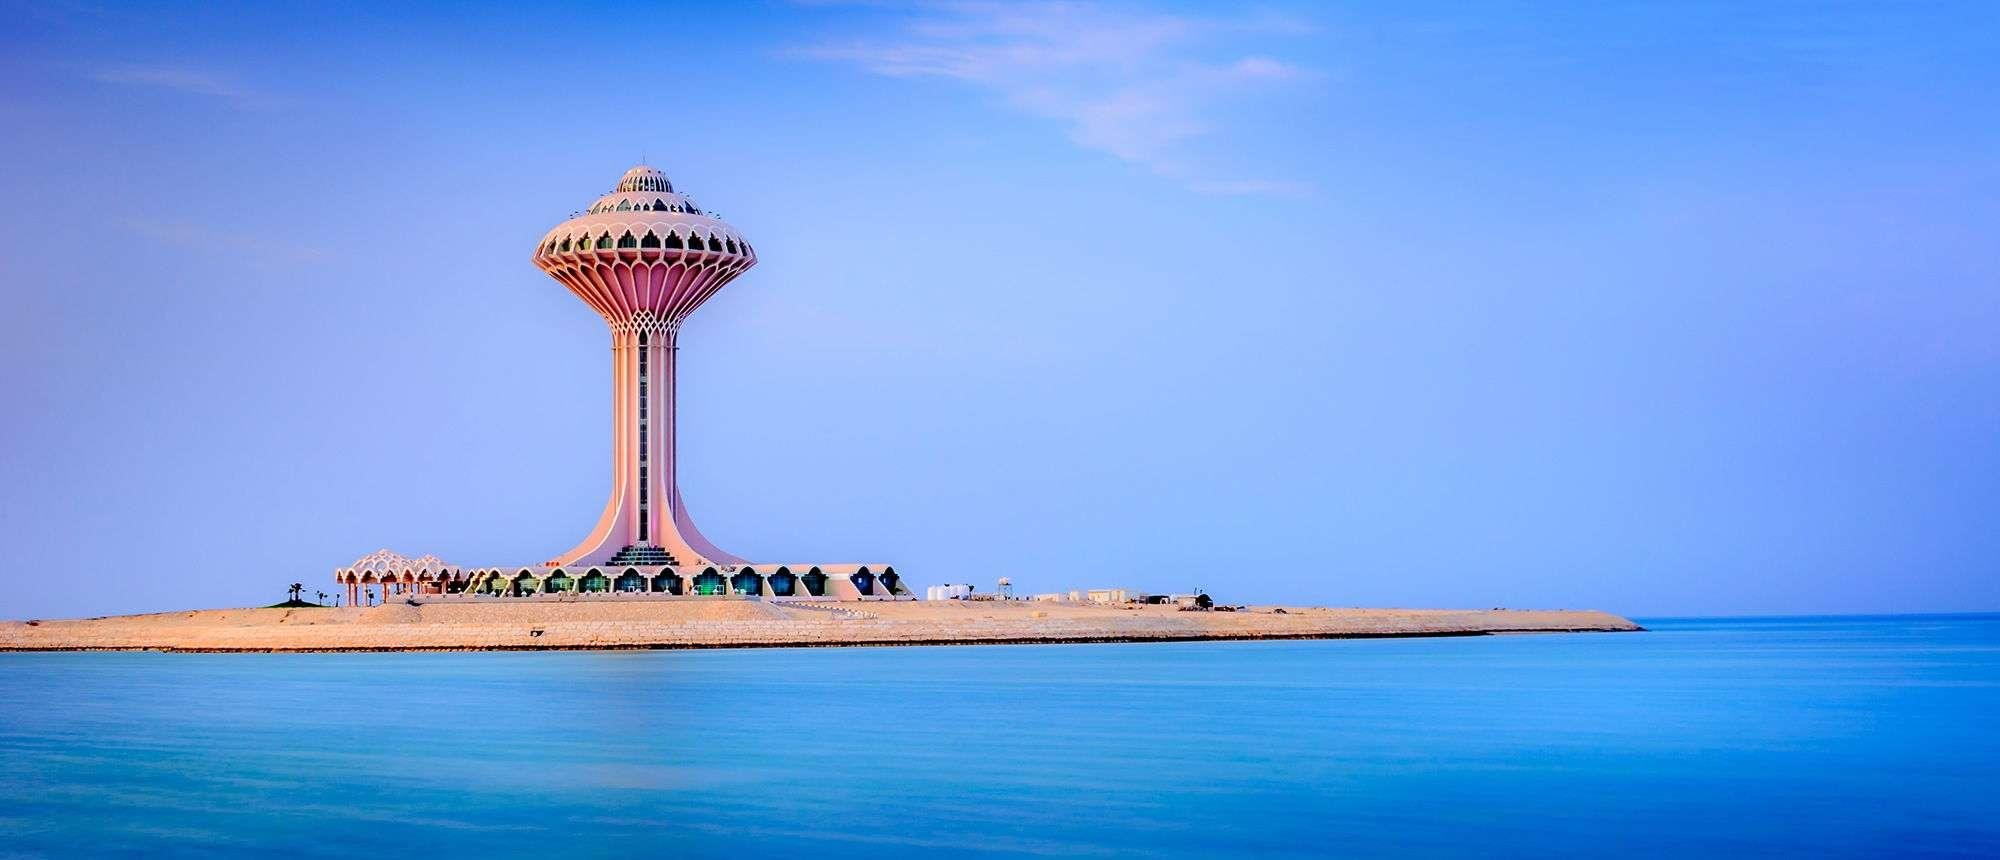 اماكن سياحية في الخبر المملكة العربية السعودية برج المياه في الخبر